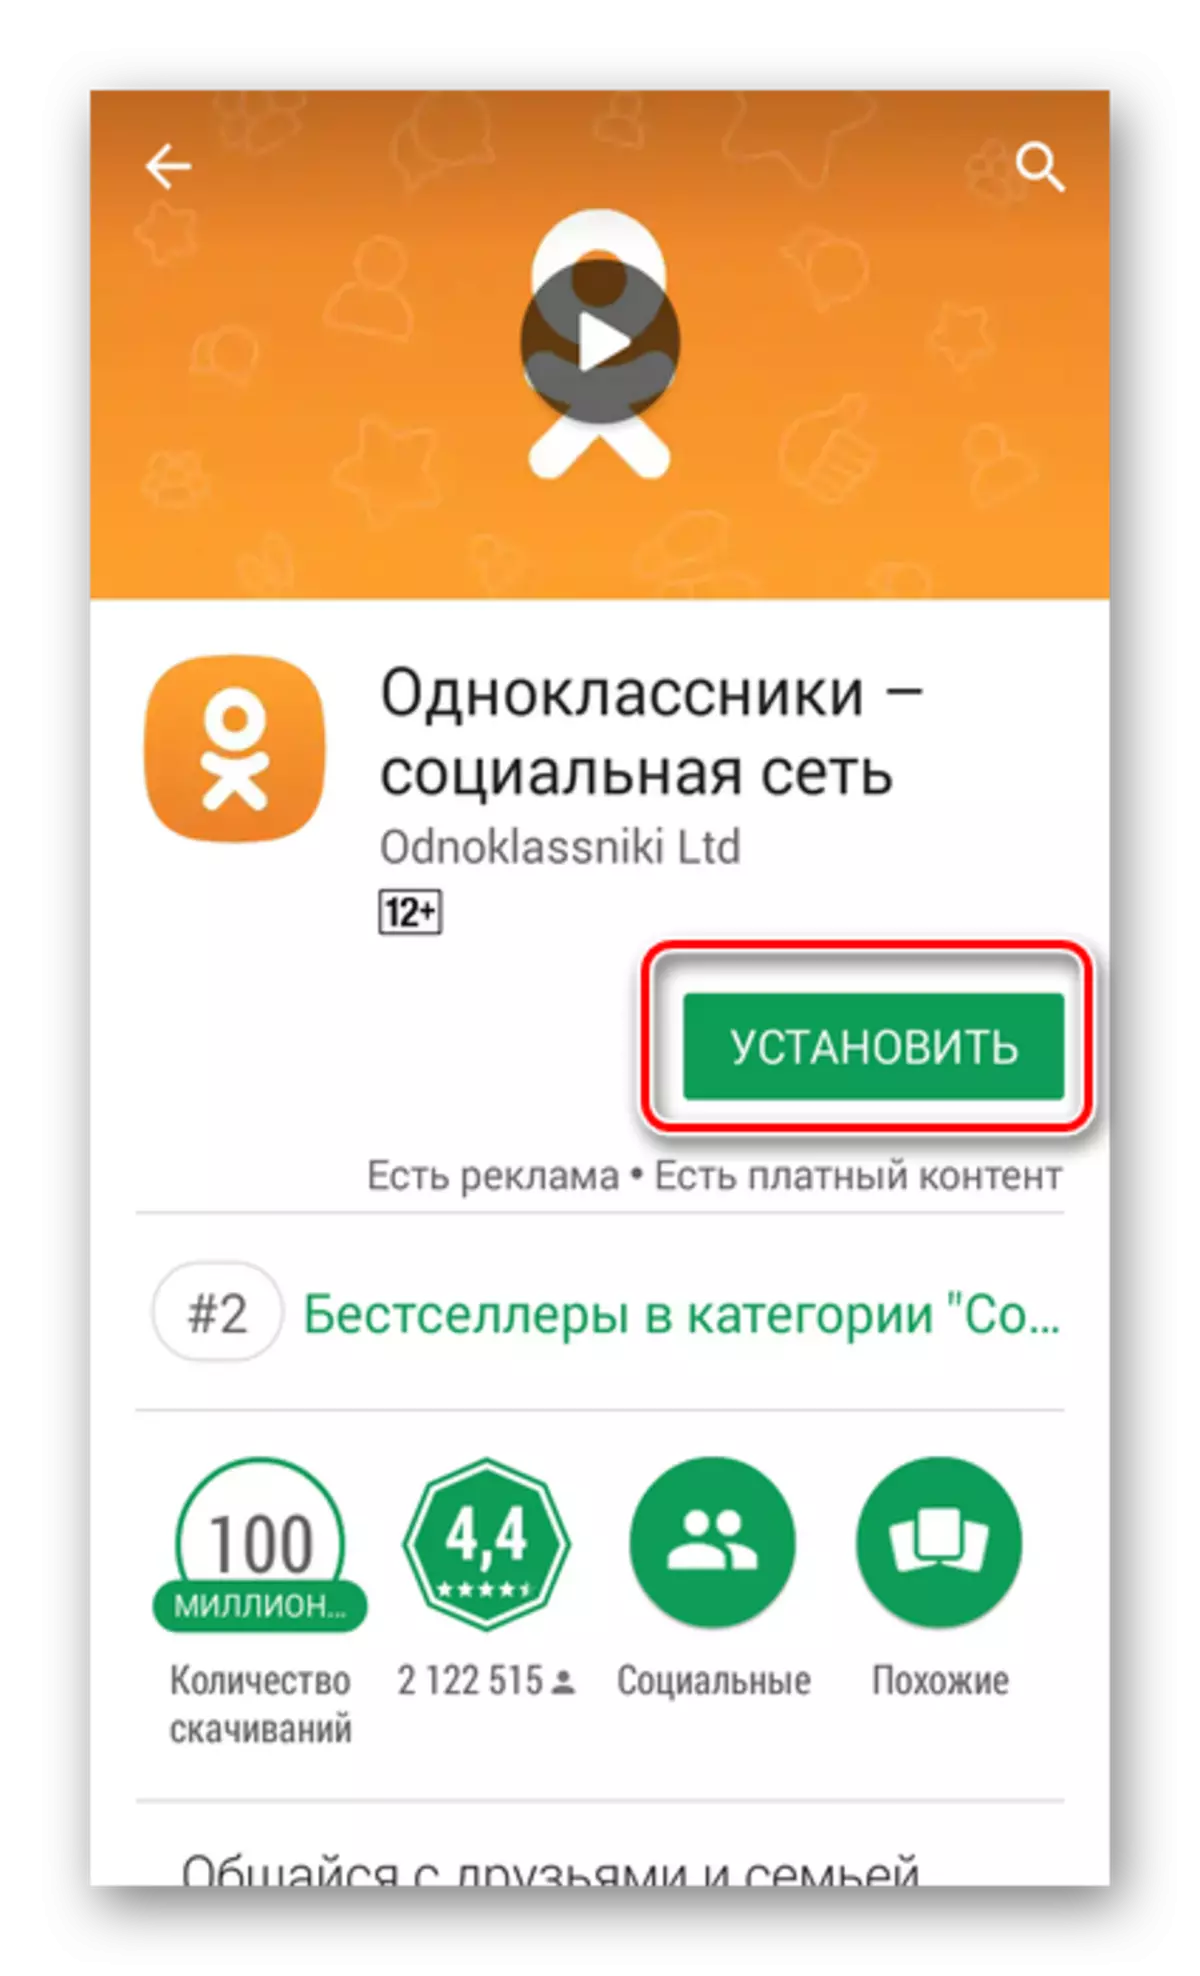 Ynstallearje odnoklassniki app